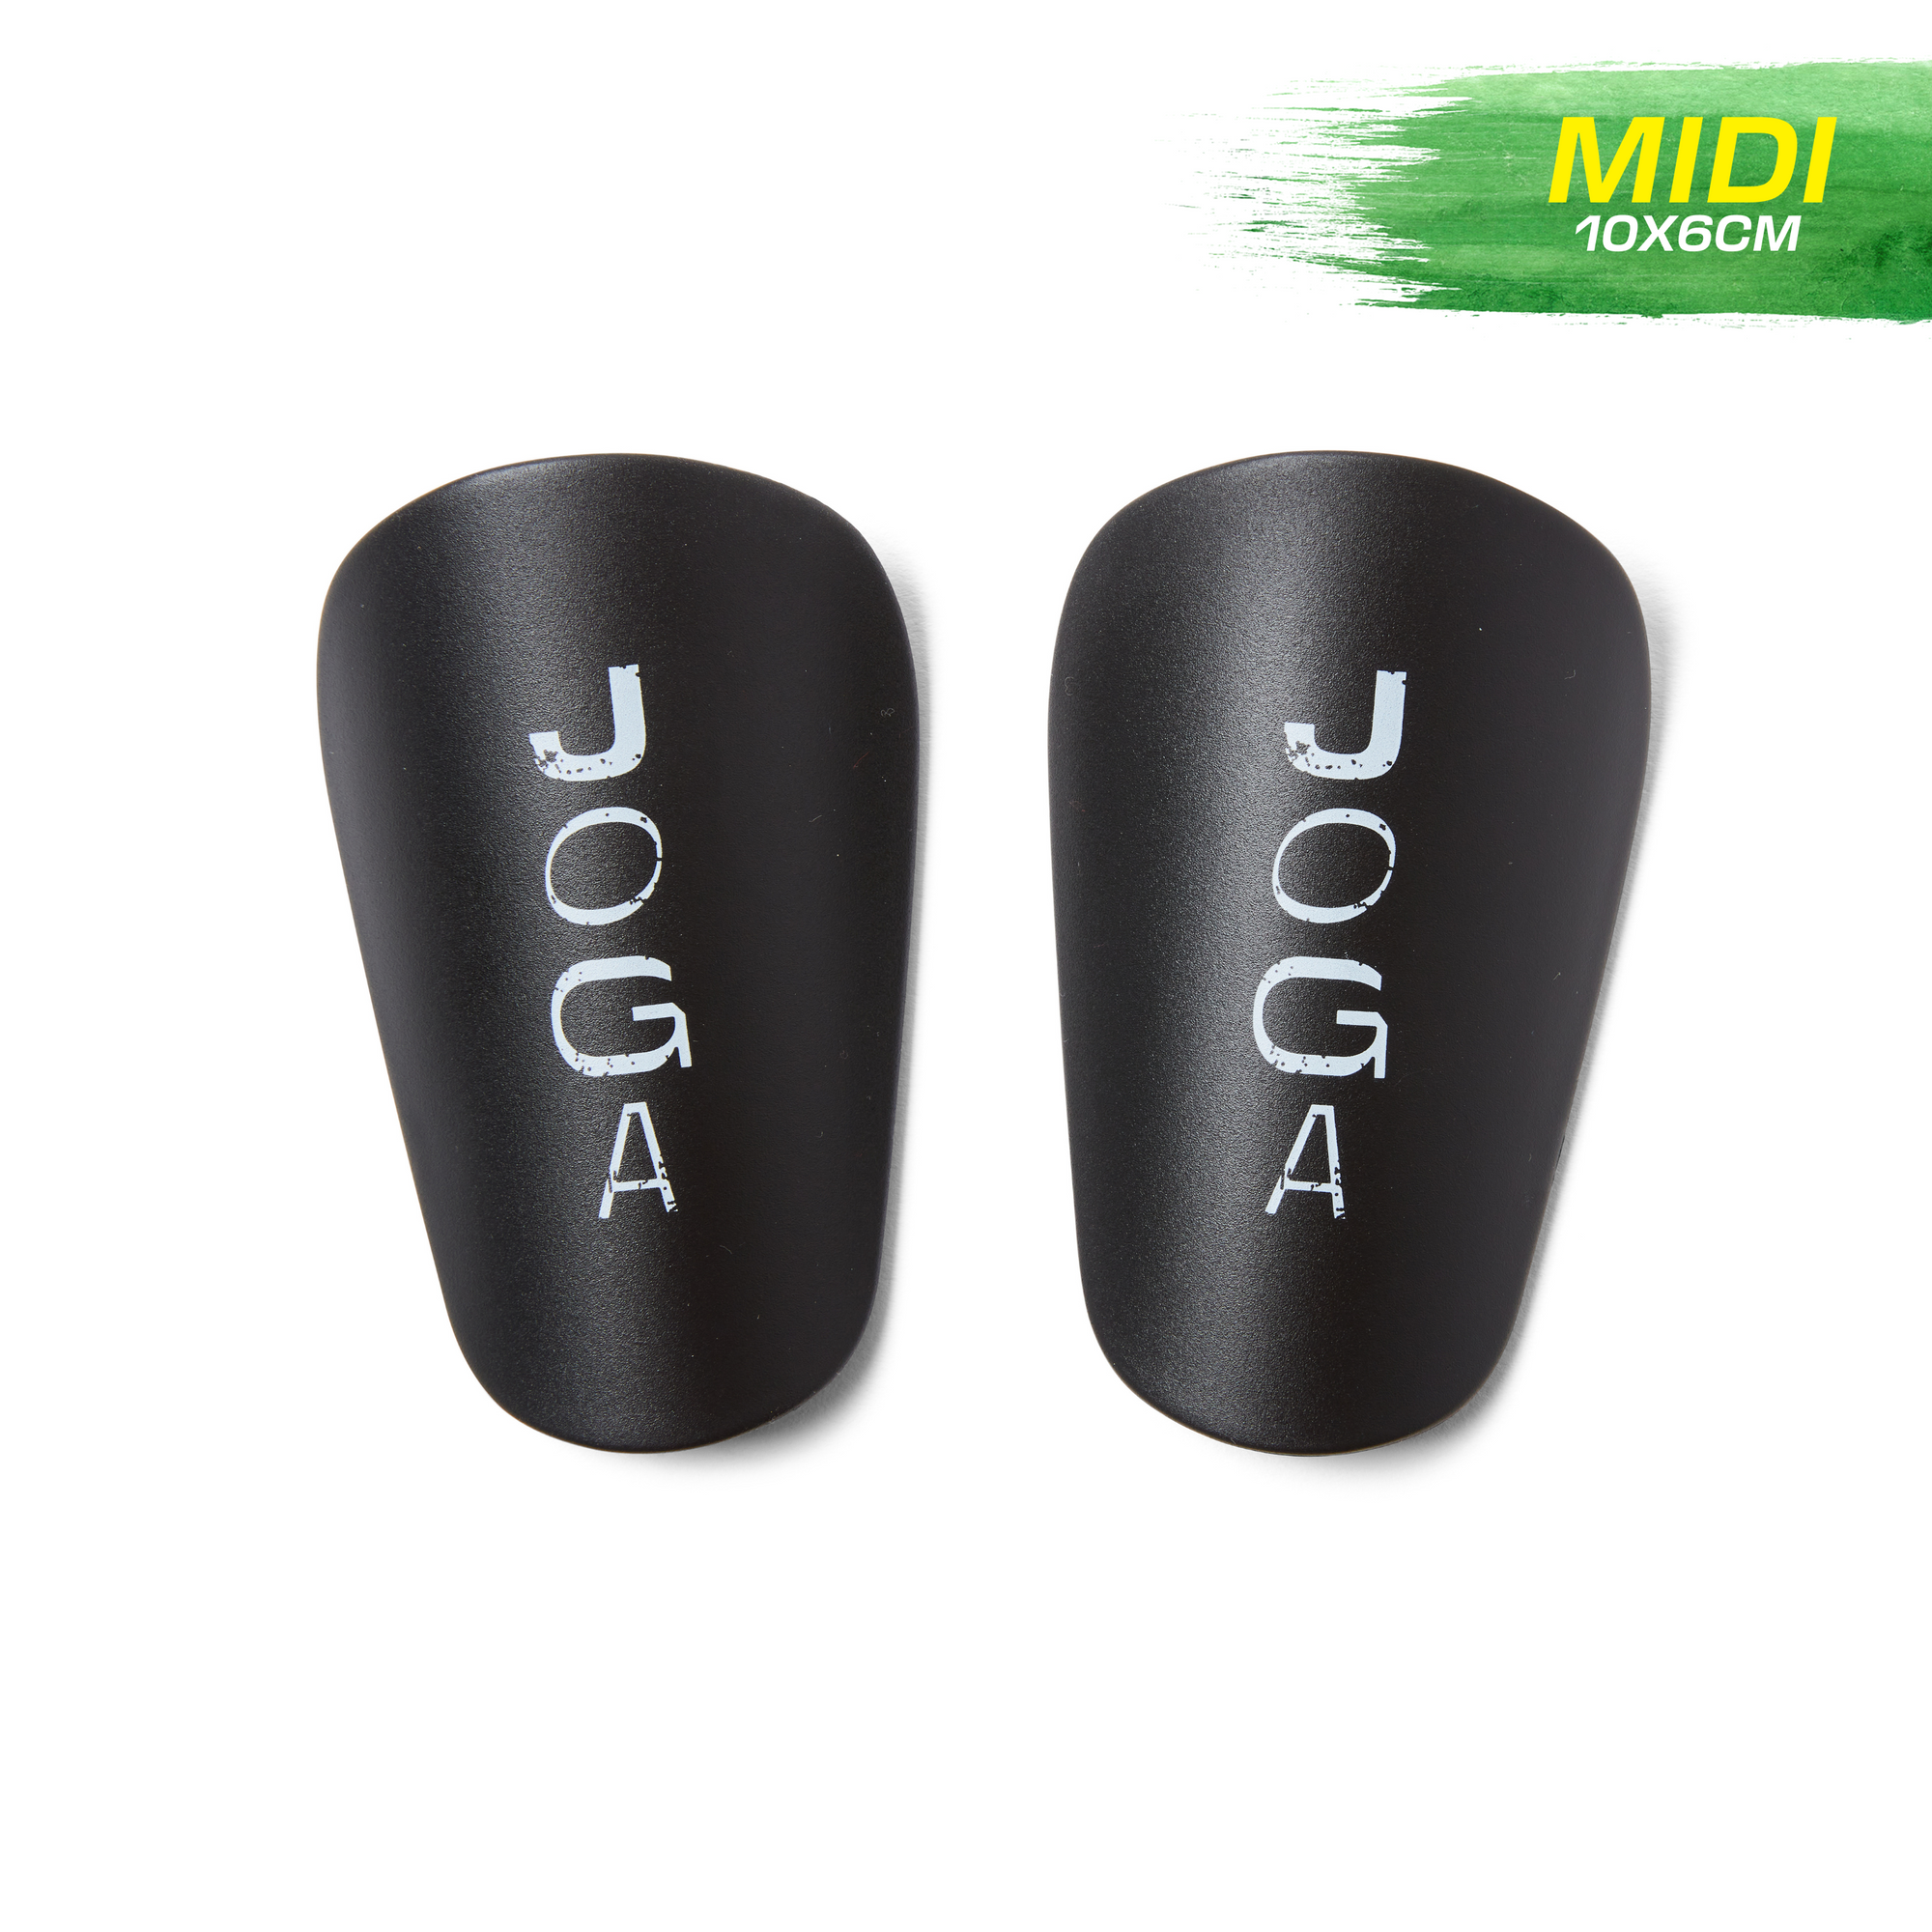 JOGA Mini Shin Pads - Black